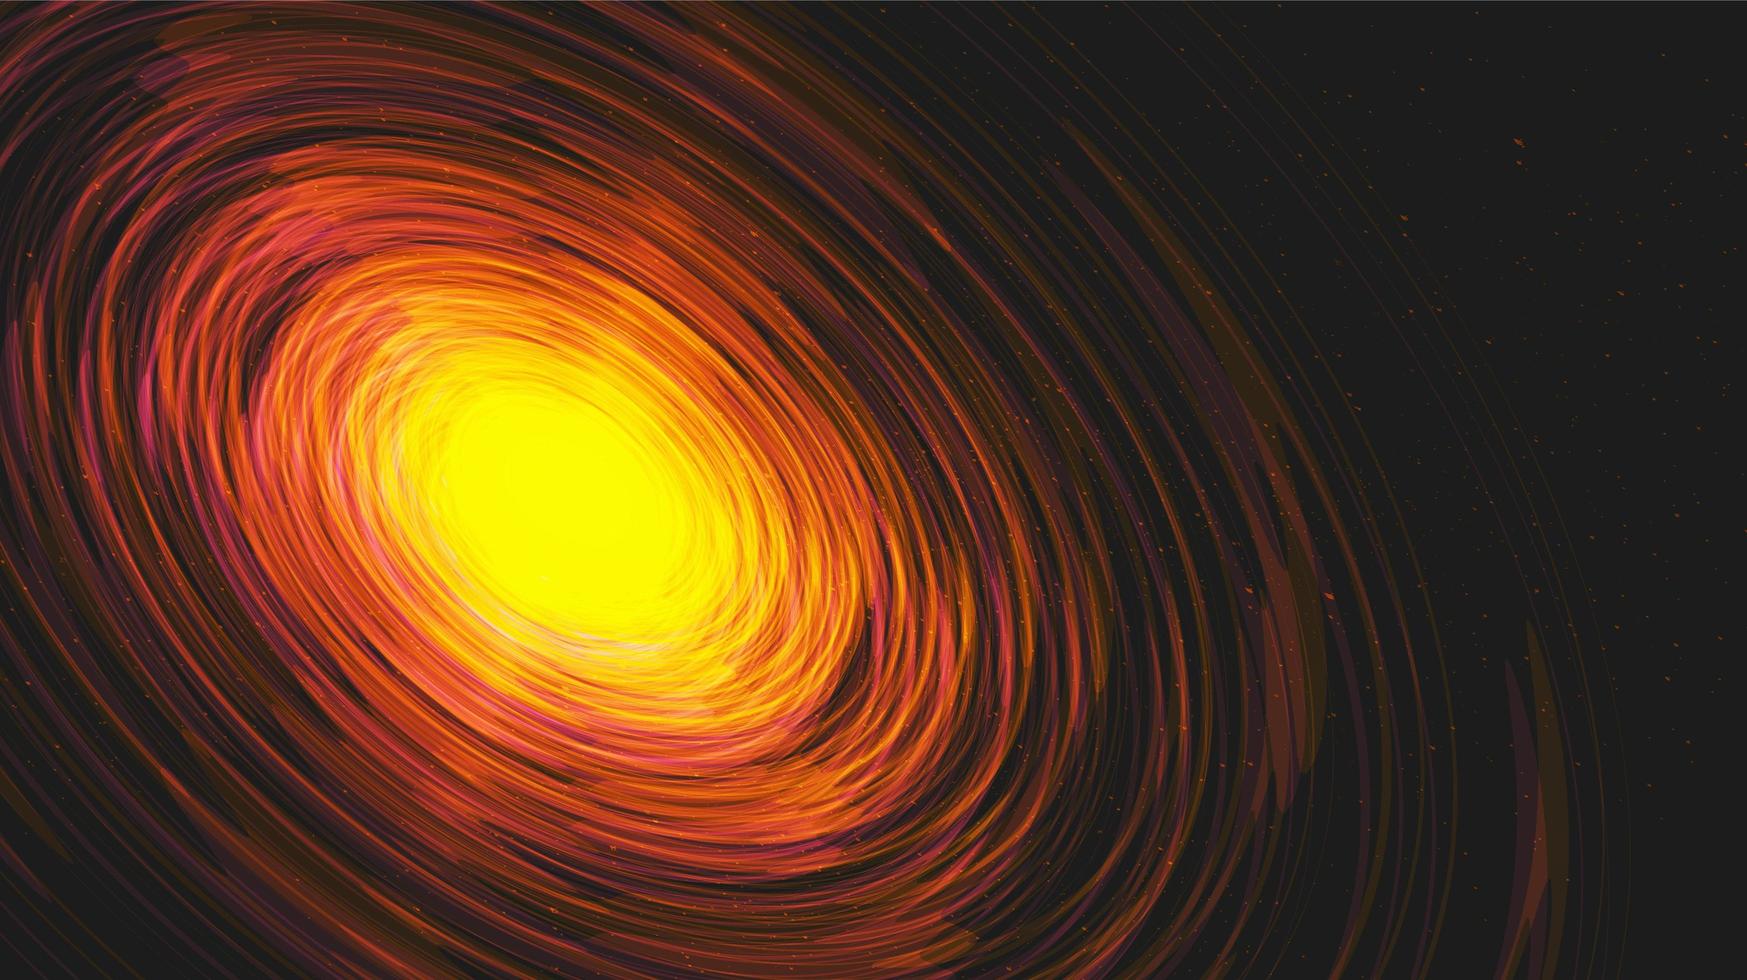 esplosione interstellare sulla galassia background.planet e fisica concept design, illustrazione vettoriale. vettore